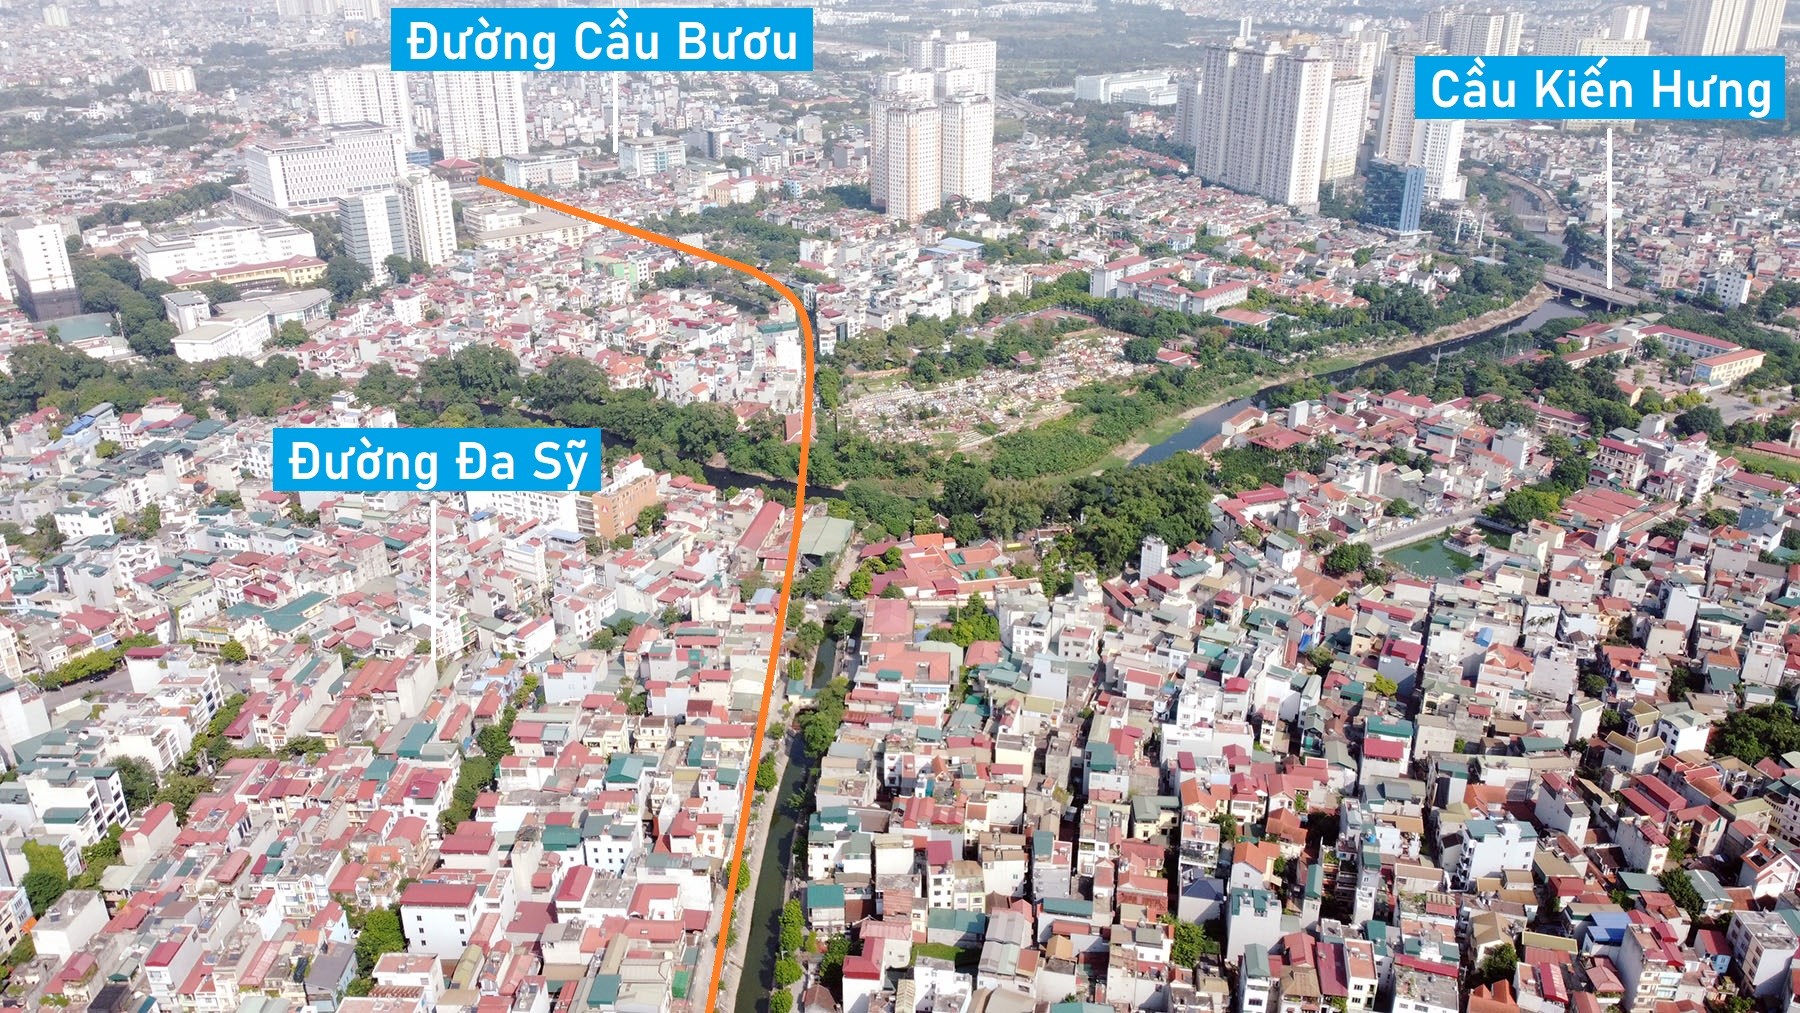 Toàn cảnh vị trí quy hoạch xây cầu vượt sông Nhuệ nối phường Phúc La - Kiến Hưng, Hà Đông, Hà Nội